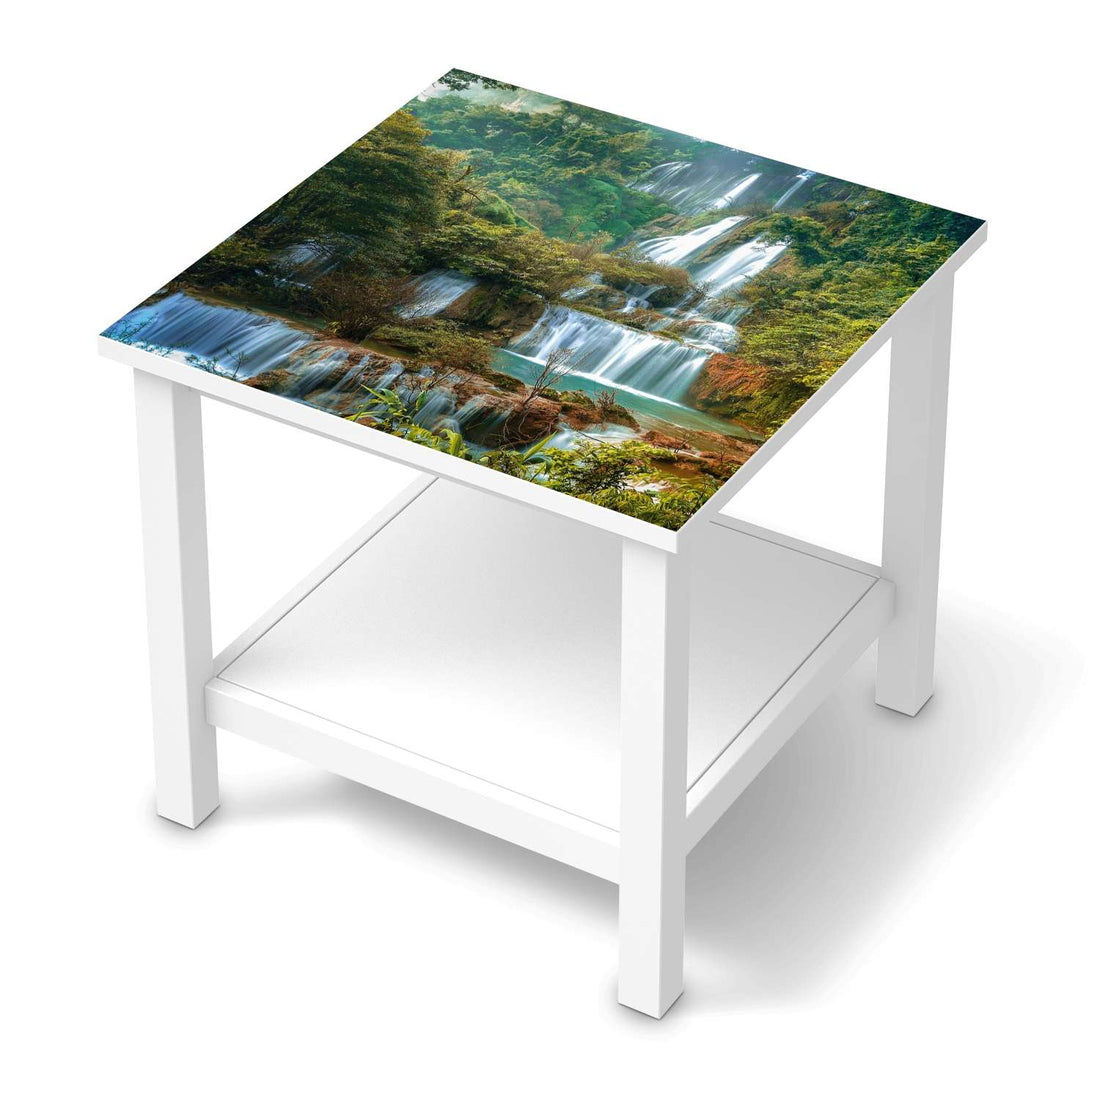 Möbel Klebefolie Rainforest - IKEA Hemnes Beistelltisch 55x55 cm  - weiss